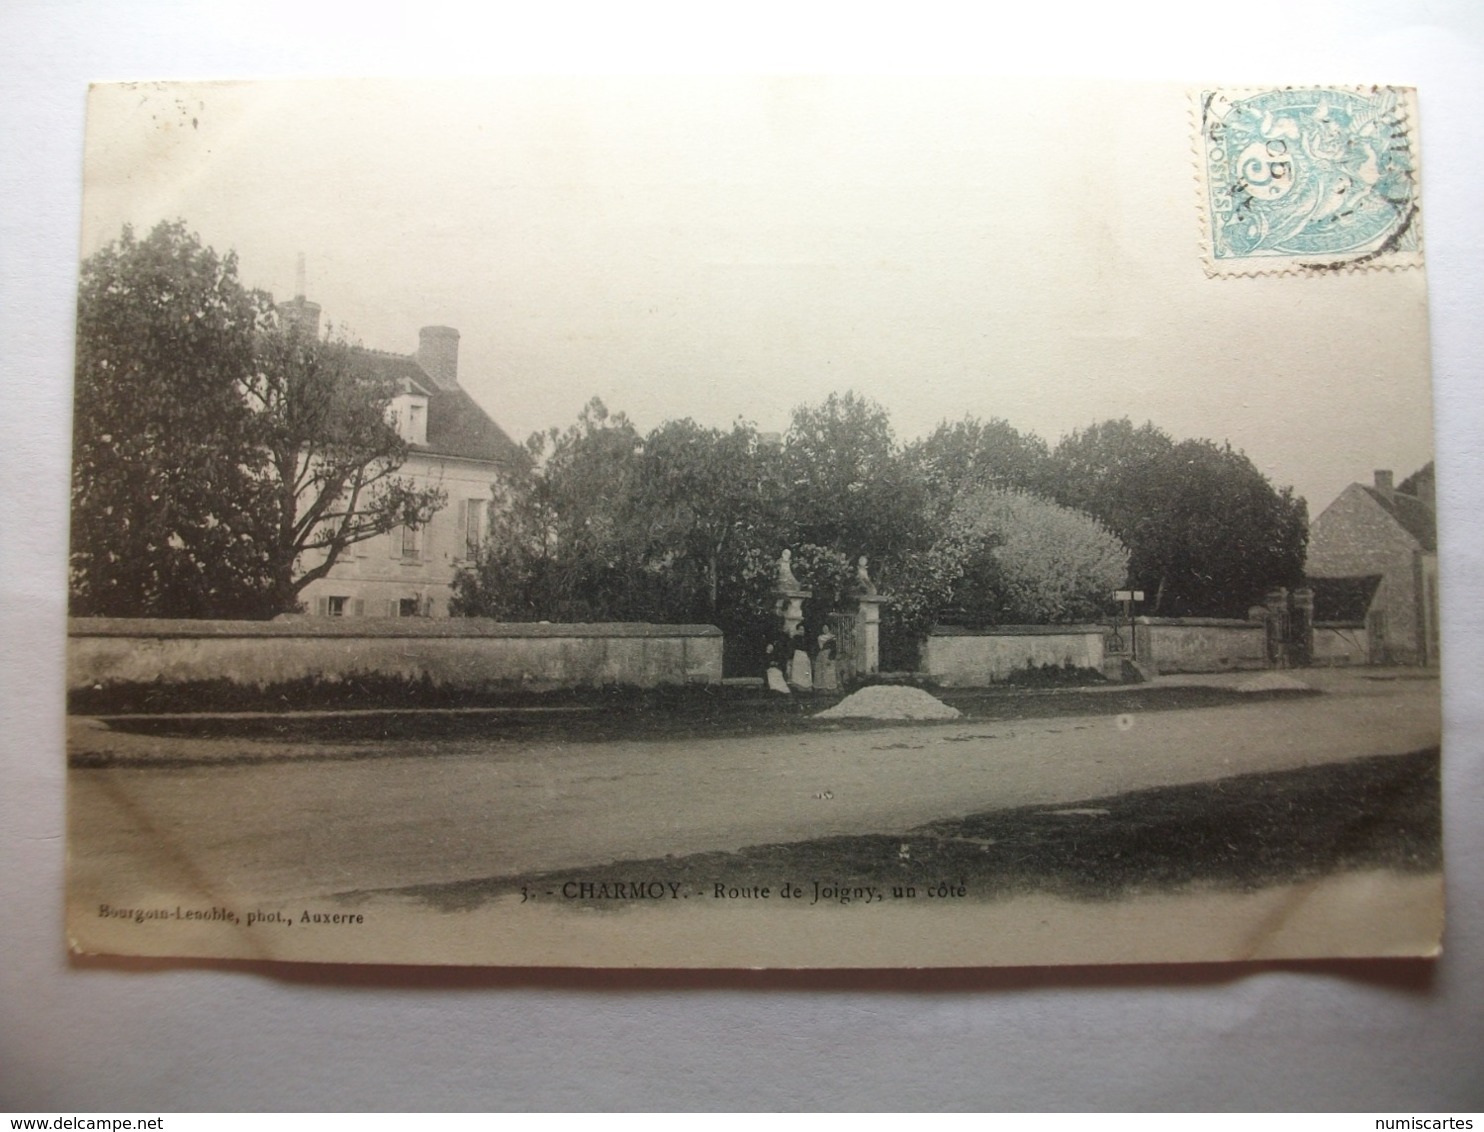 Carte Postale Charmoy (89) Route De Joigny  (Petit Format Noir Et Blanc Oblitérée 1905 Timbre 5 Centimes ) - Charmoy